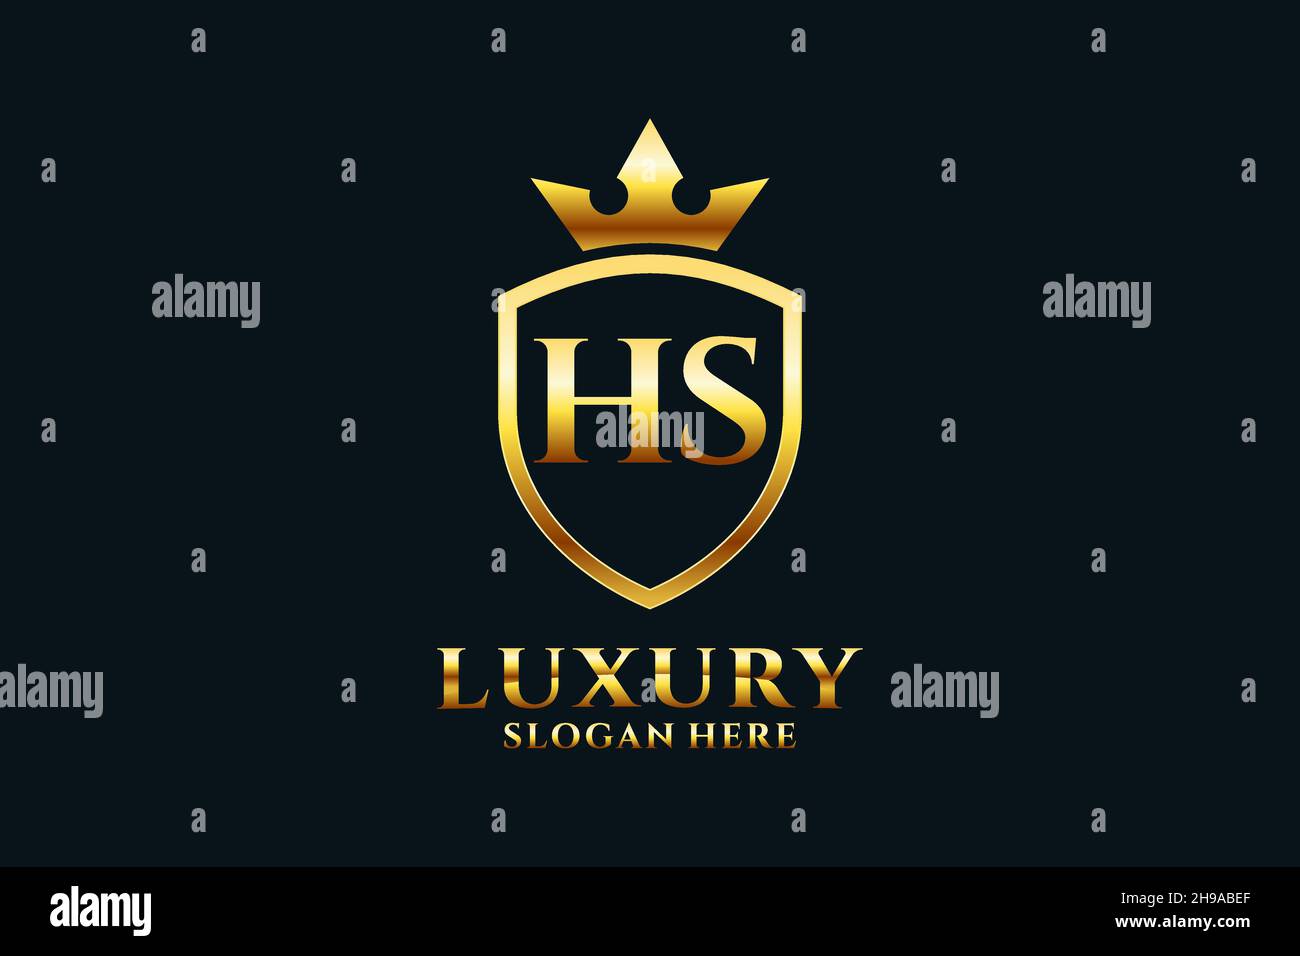 HS élégant de luxe monogramme logo ou modèle de badge avec rouleaux et couronne royale - parfait pour les projets de marque de luxe Illustration de Vecteur